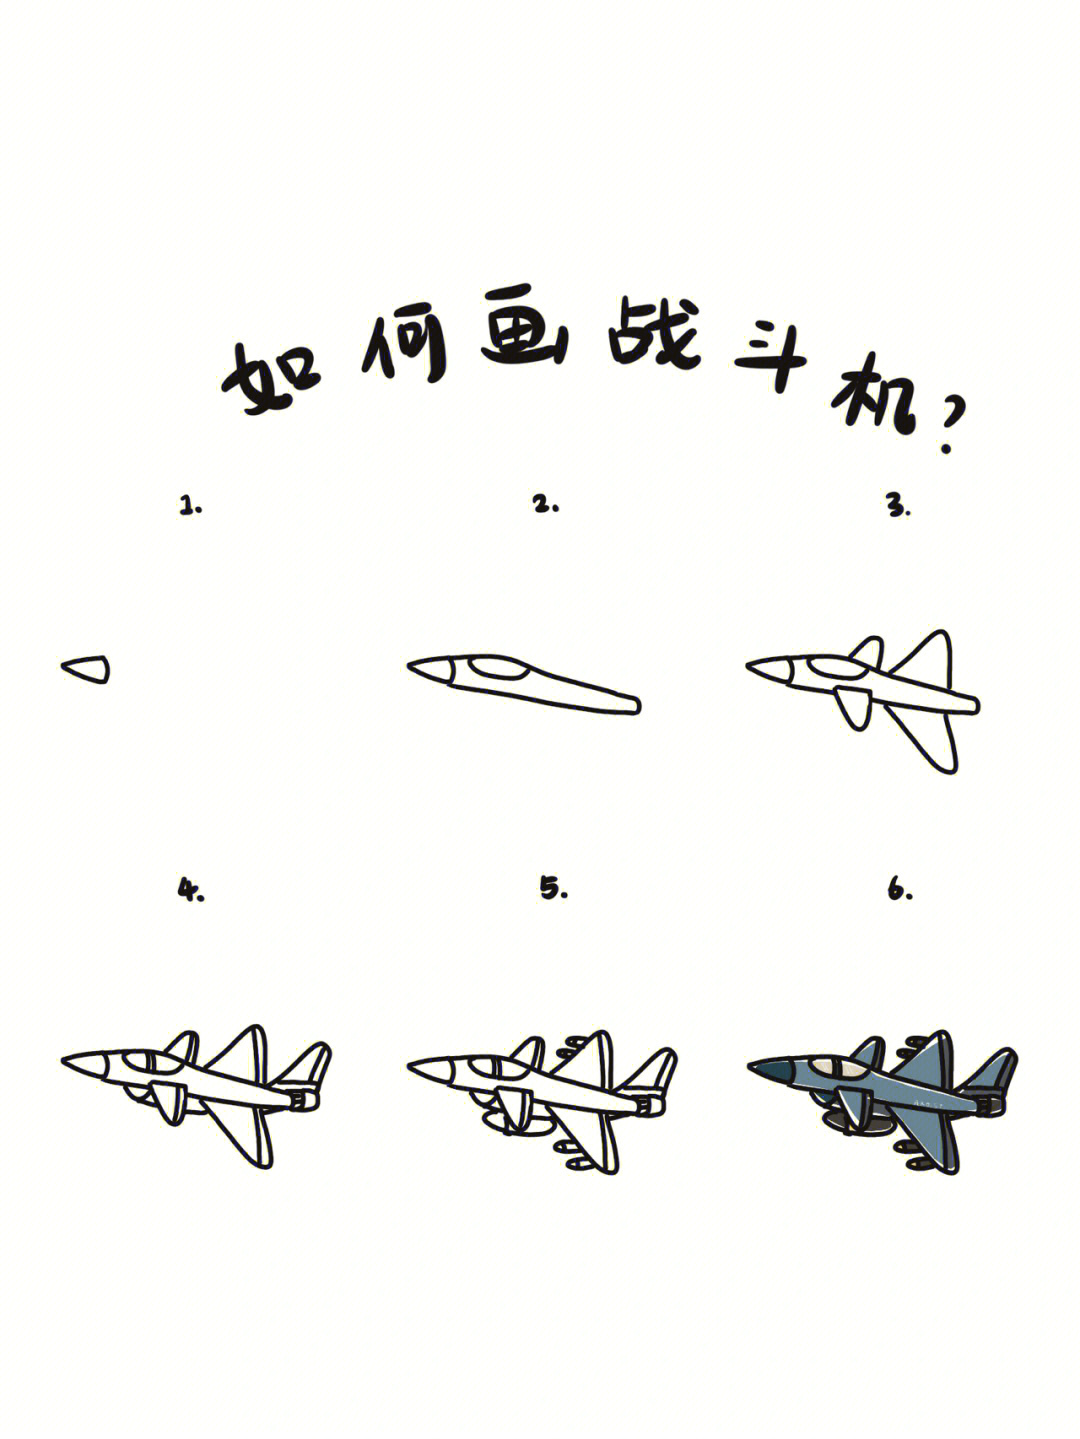 战斗飞机怎么画 画法图片